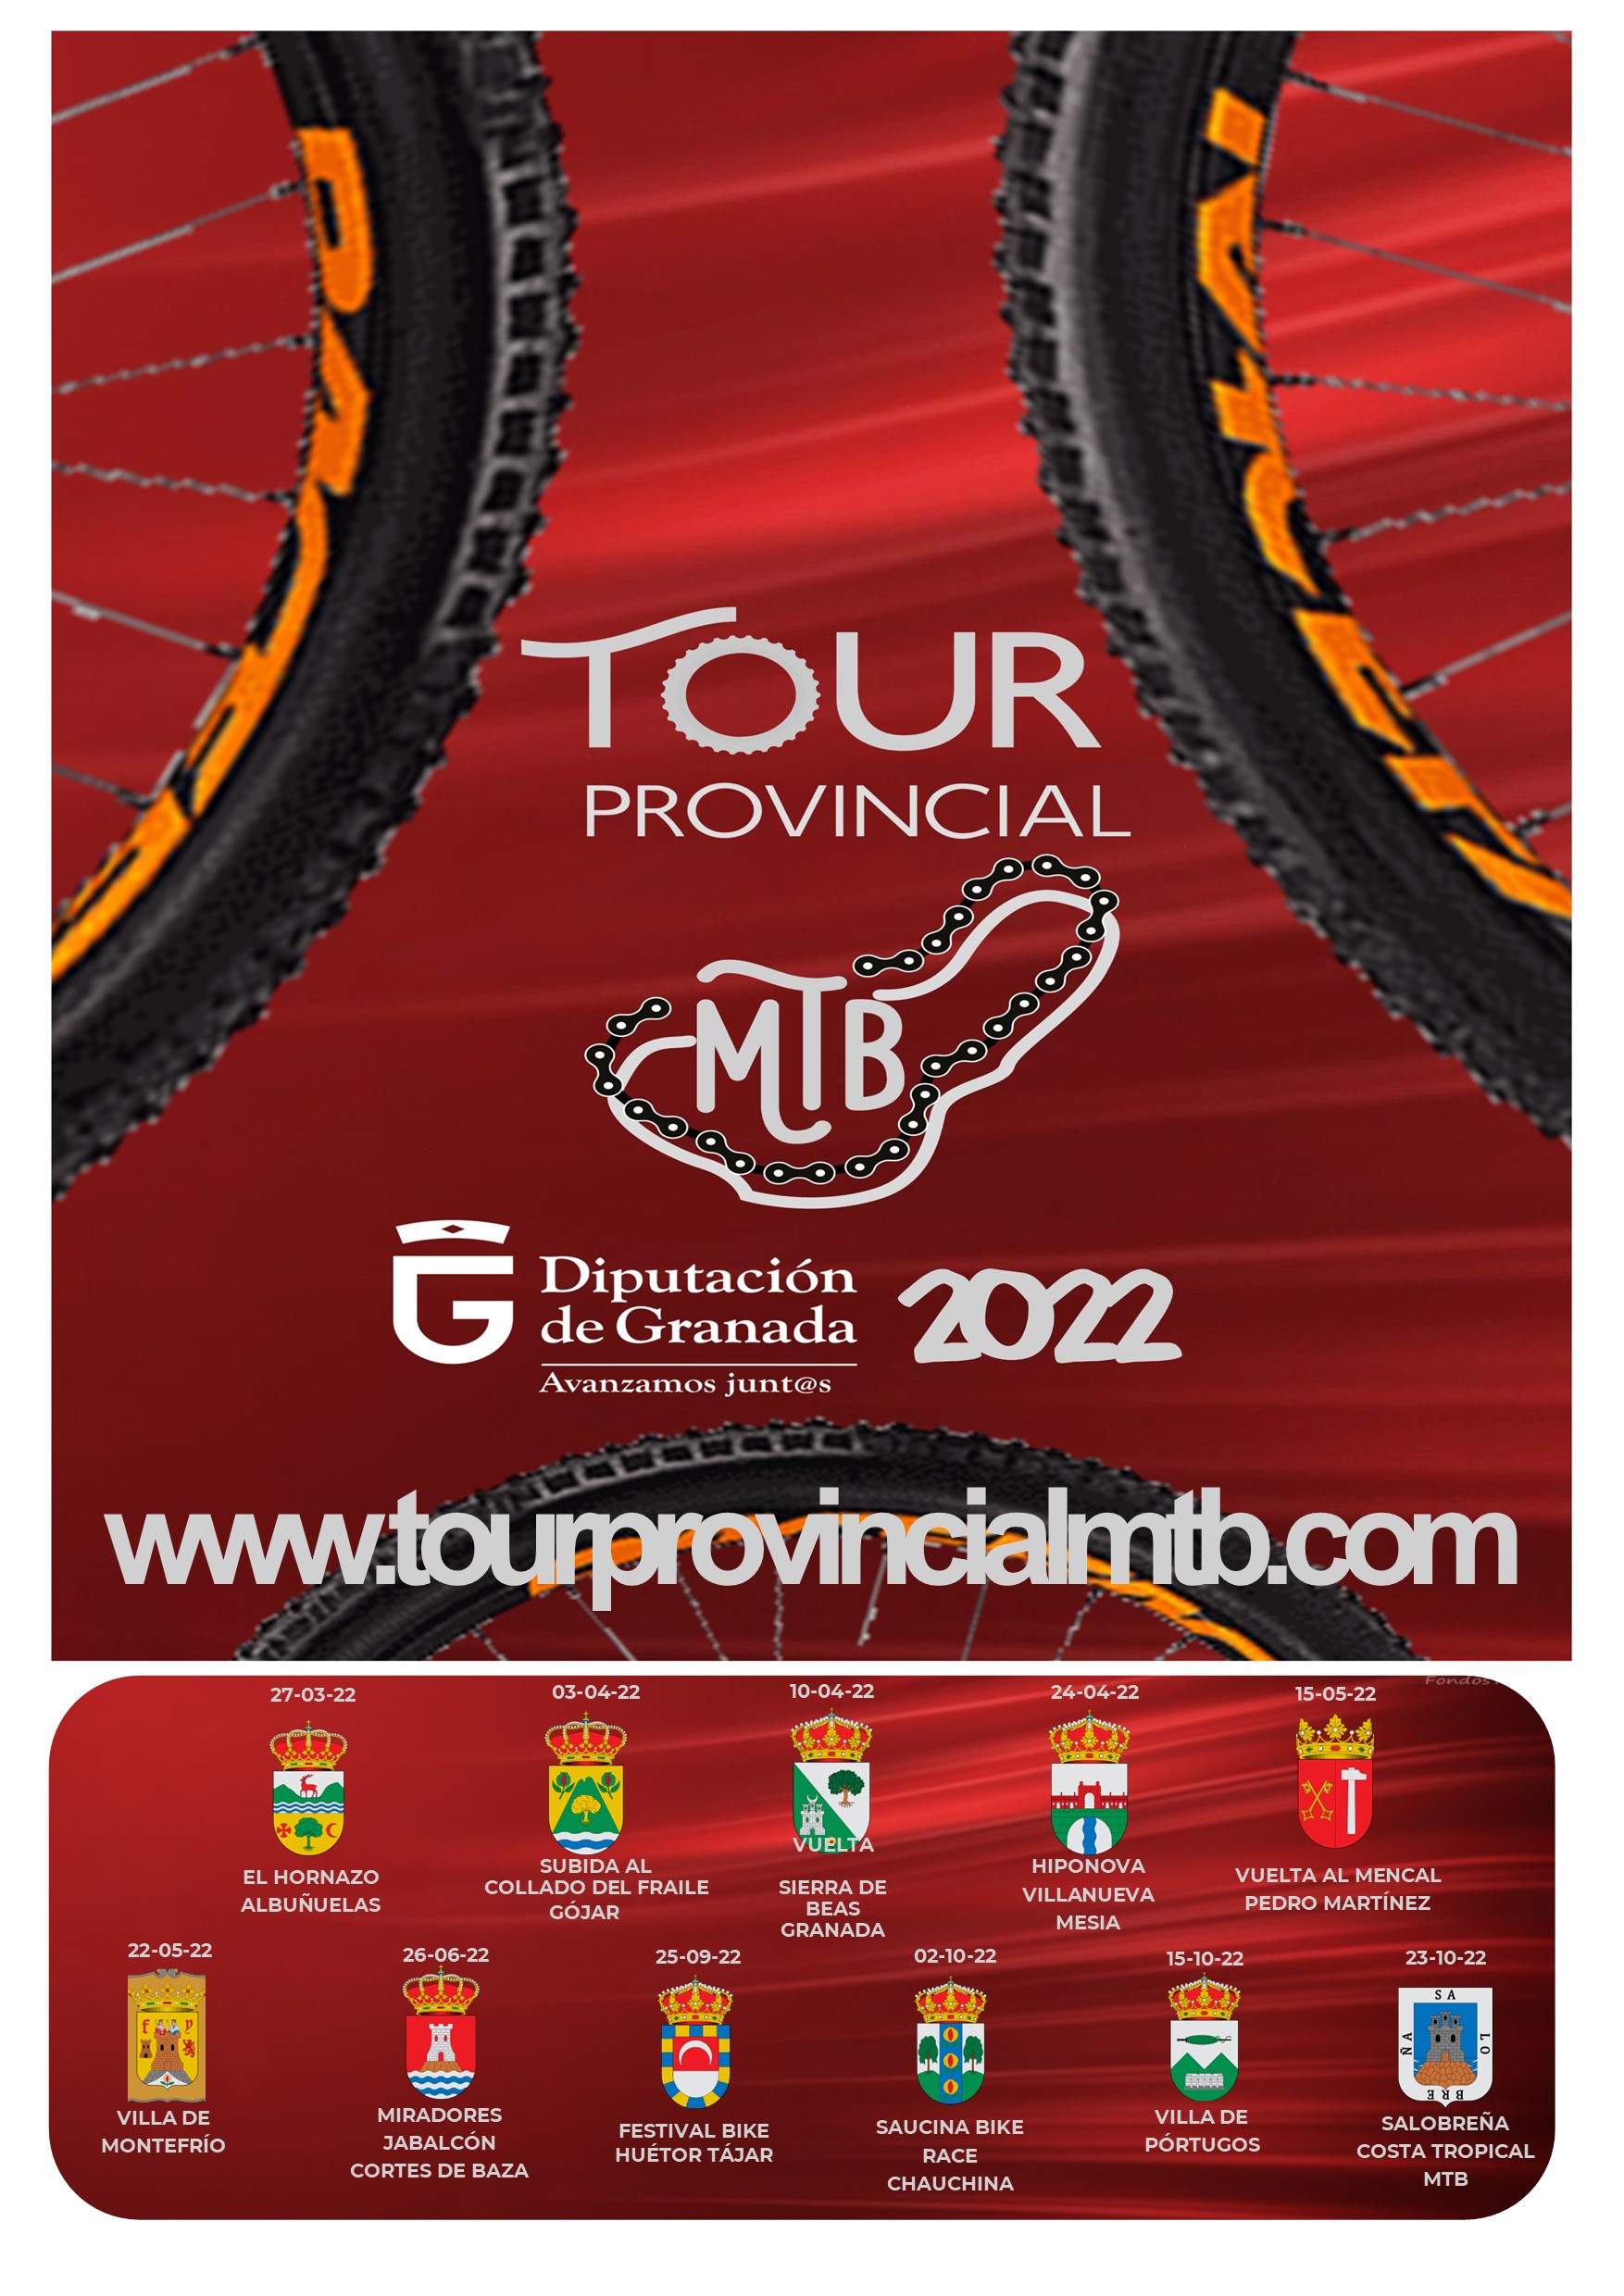 TOUR  PROVINCIAL MTB 2022 - FESTIVAL BIKE